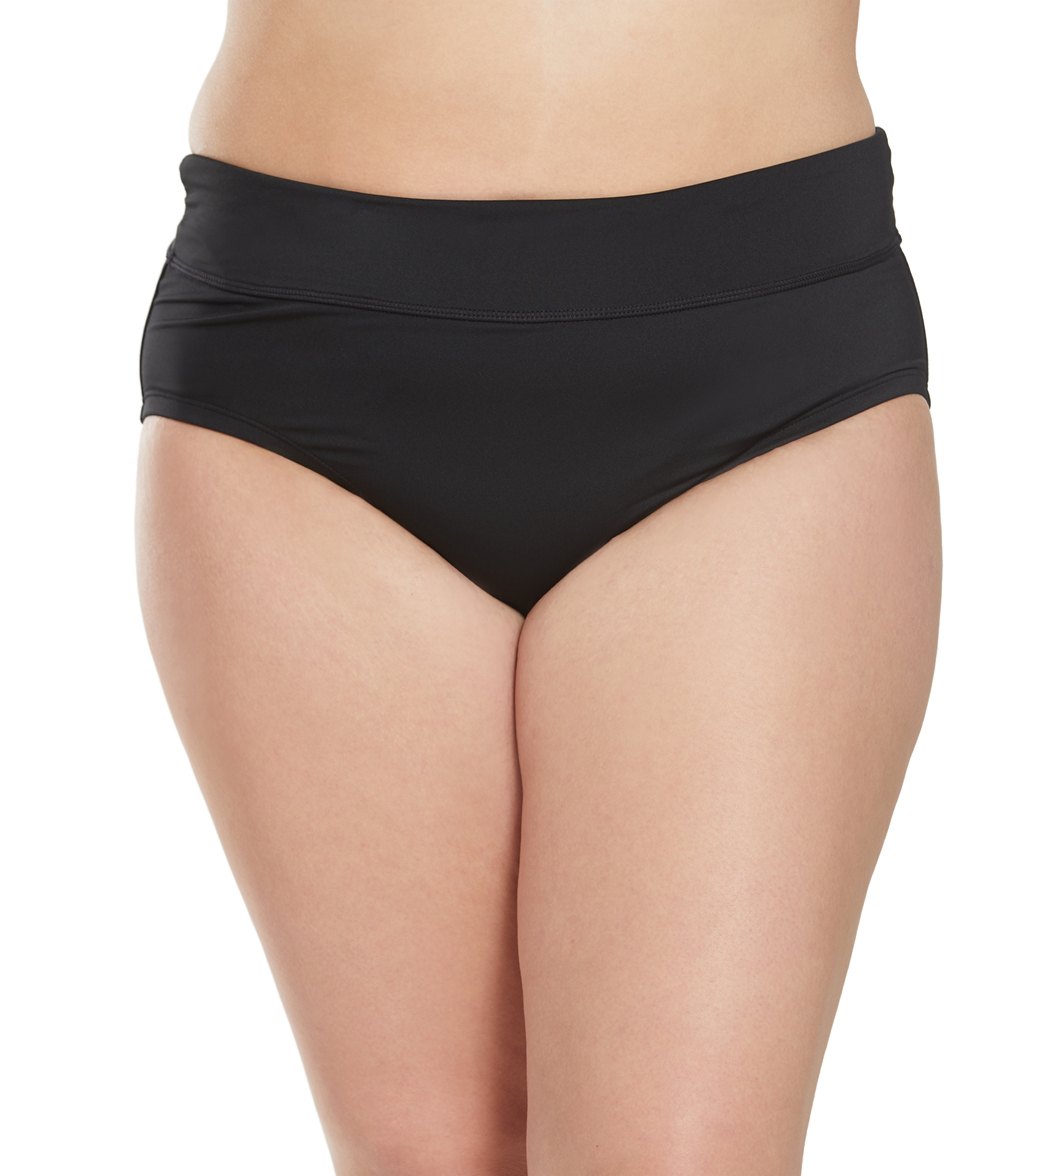 Nike Plus Size Full Bikini Bottom - Black 3X Polyester - Swimoutlet.com